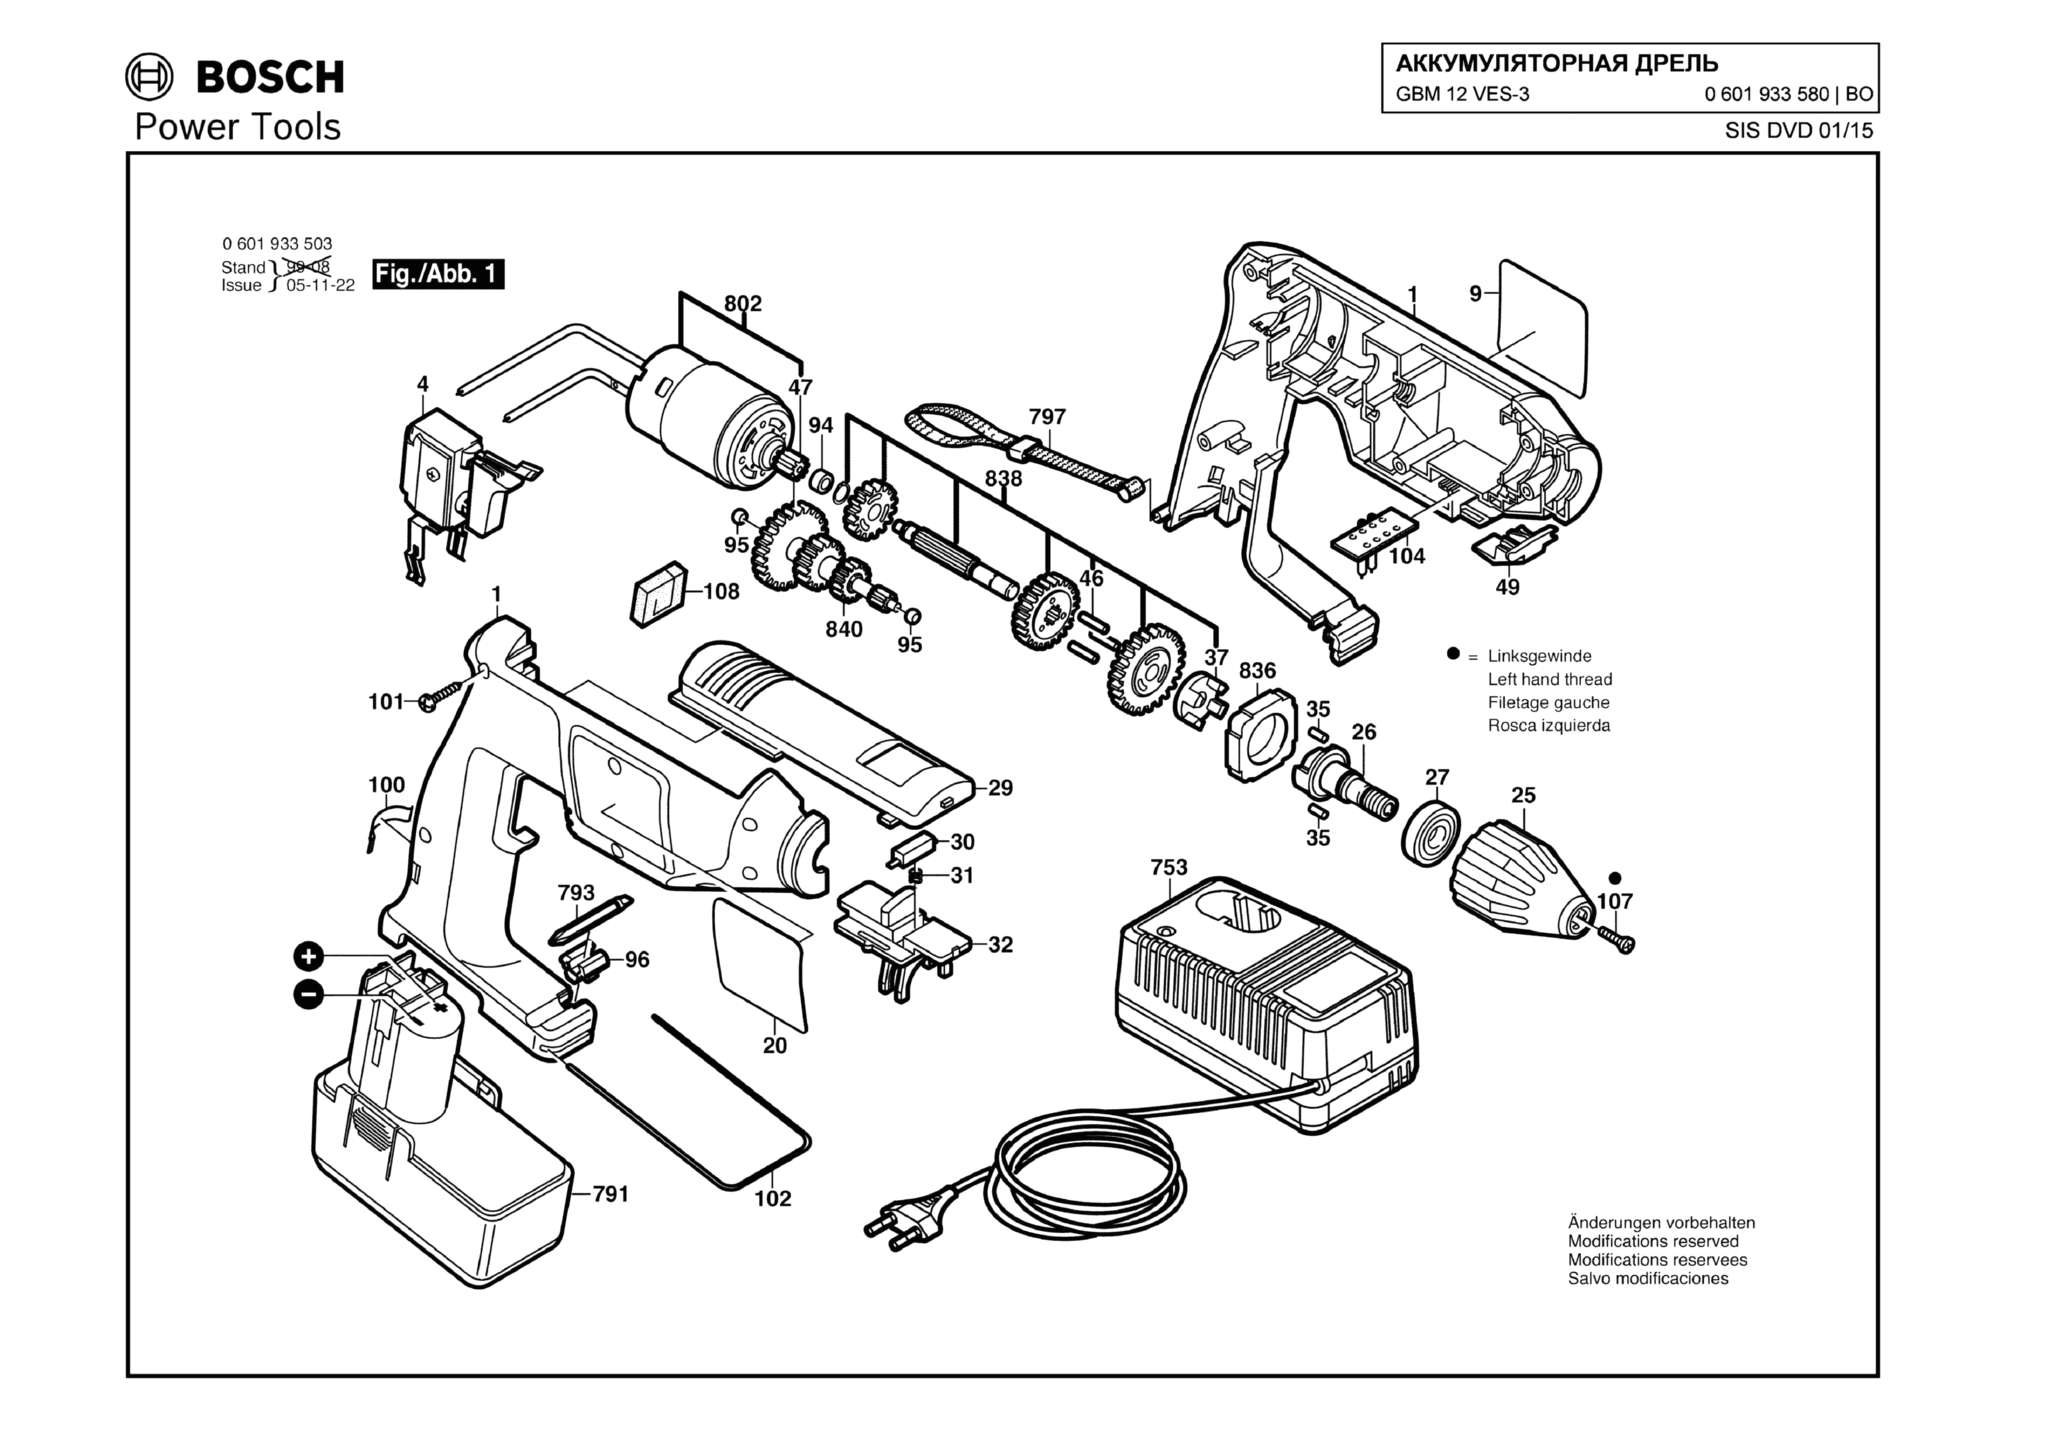 Запчасти, схема и деталировка Bosch GBM 12 VES-3 (ТИП 0601933580)